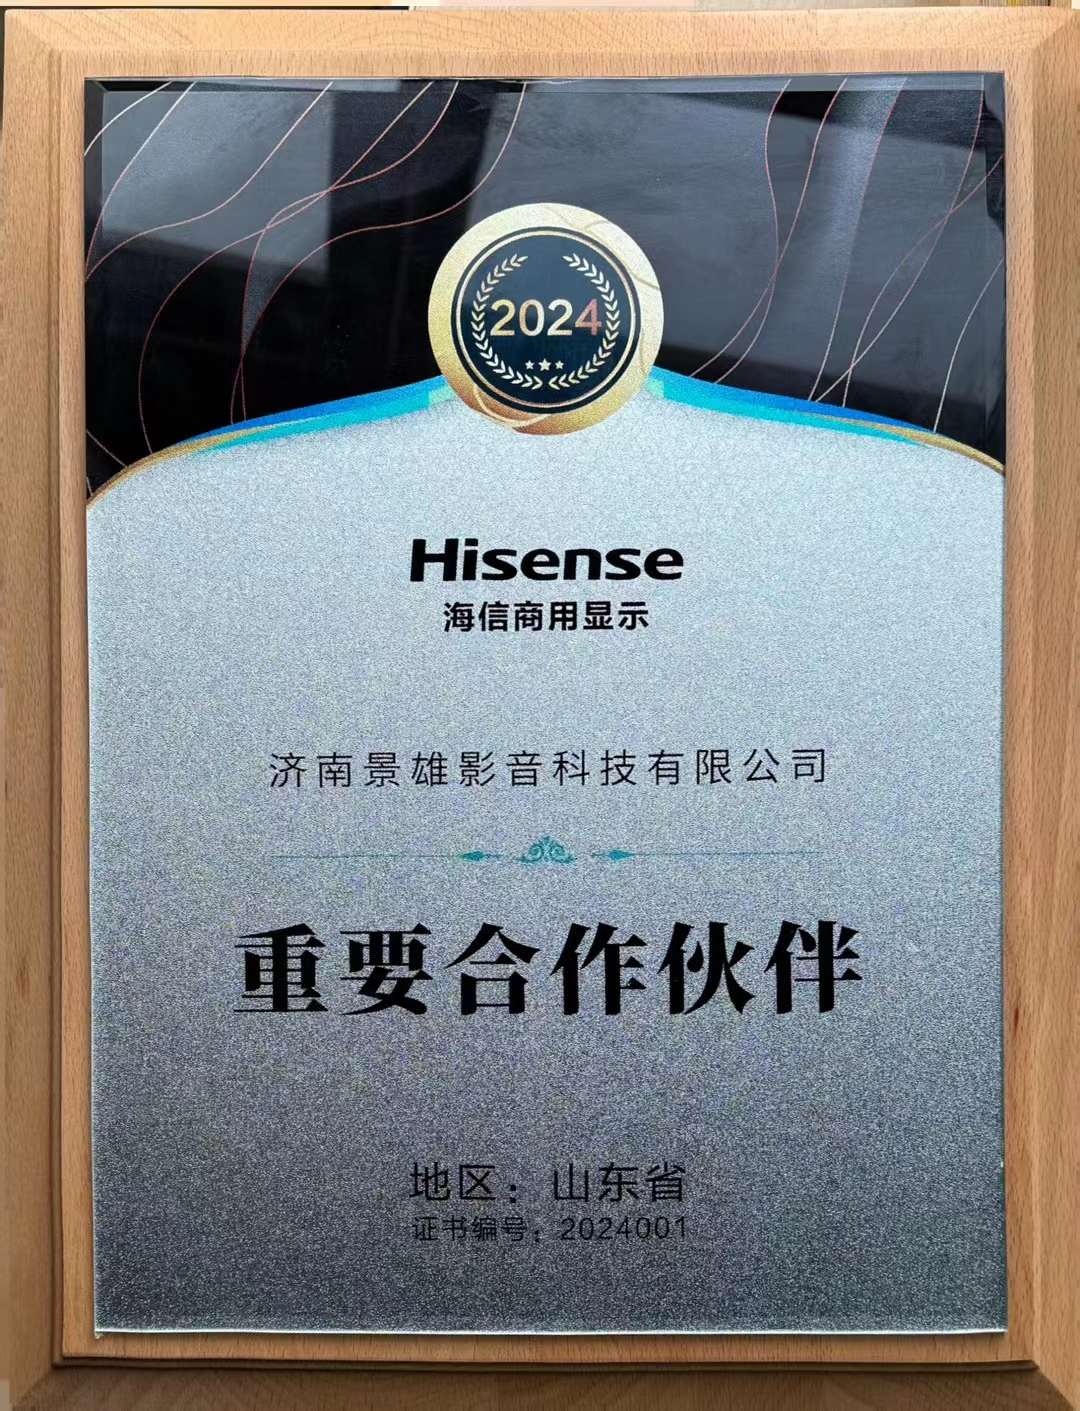 Hisense重要合作伙伴